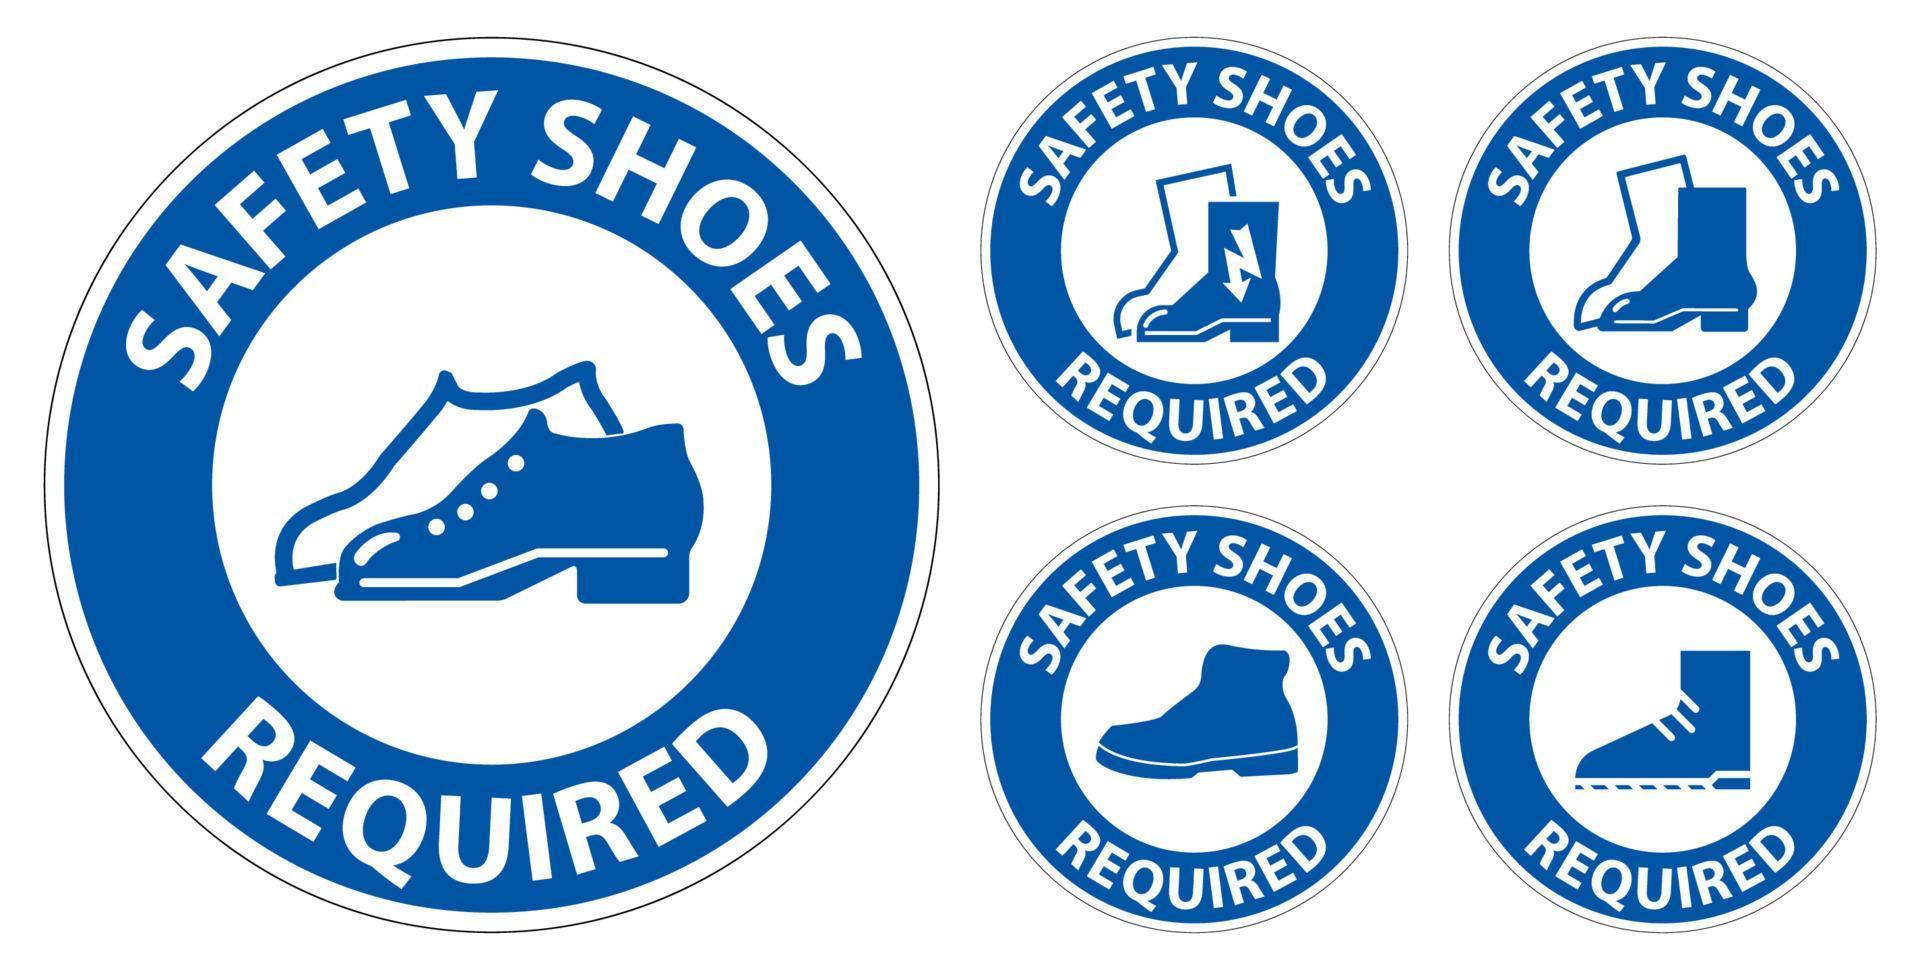 letrero de piso de etiqueta, se requieren zapatos de seguridad vector